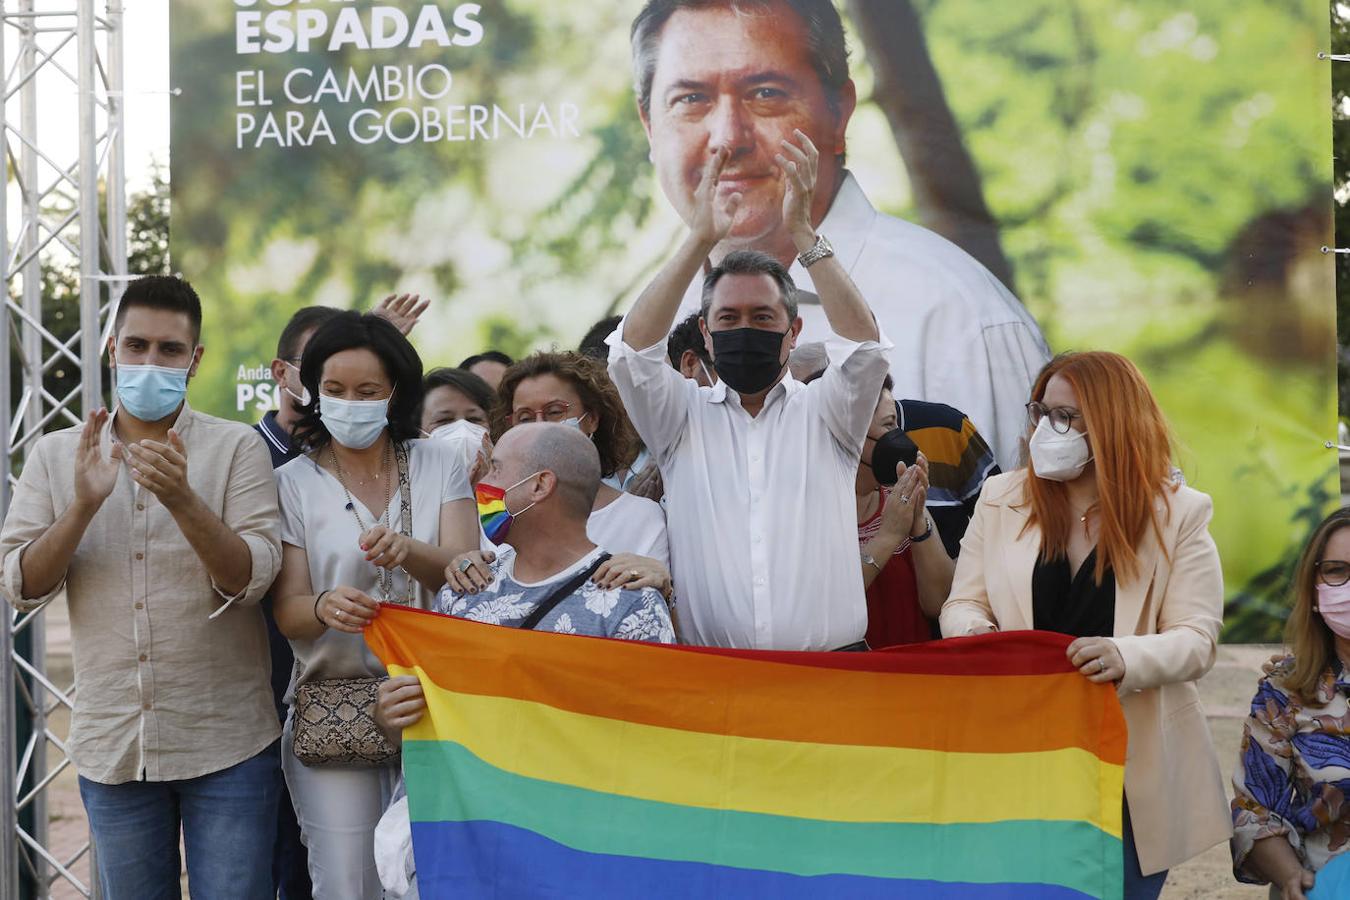 El acto de Juan Espadas en Córdoba, en imágenes